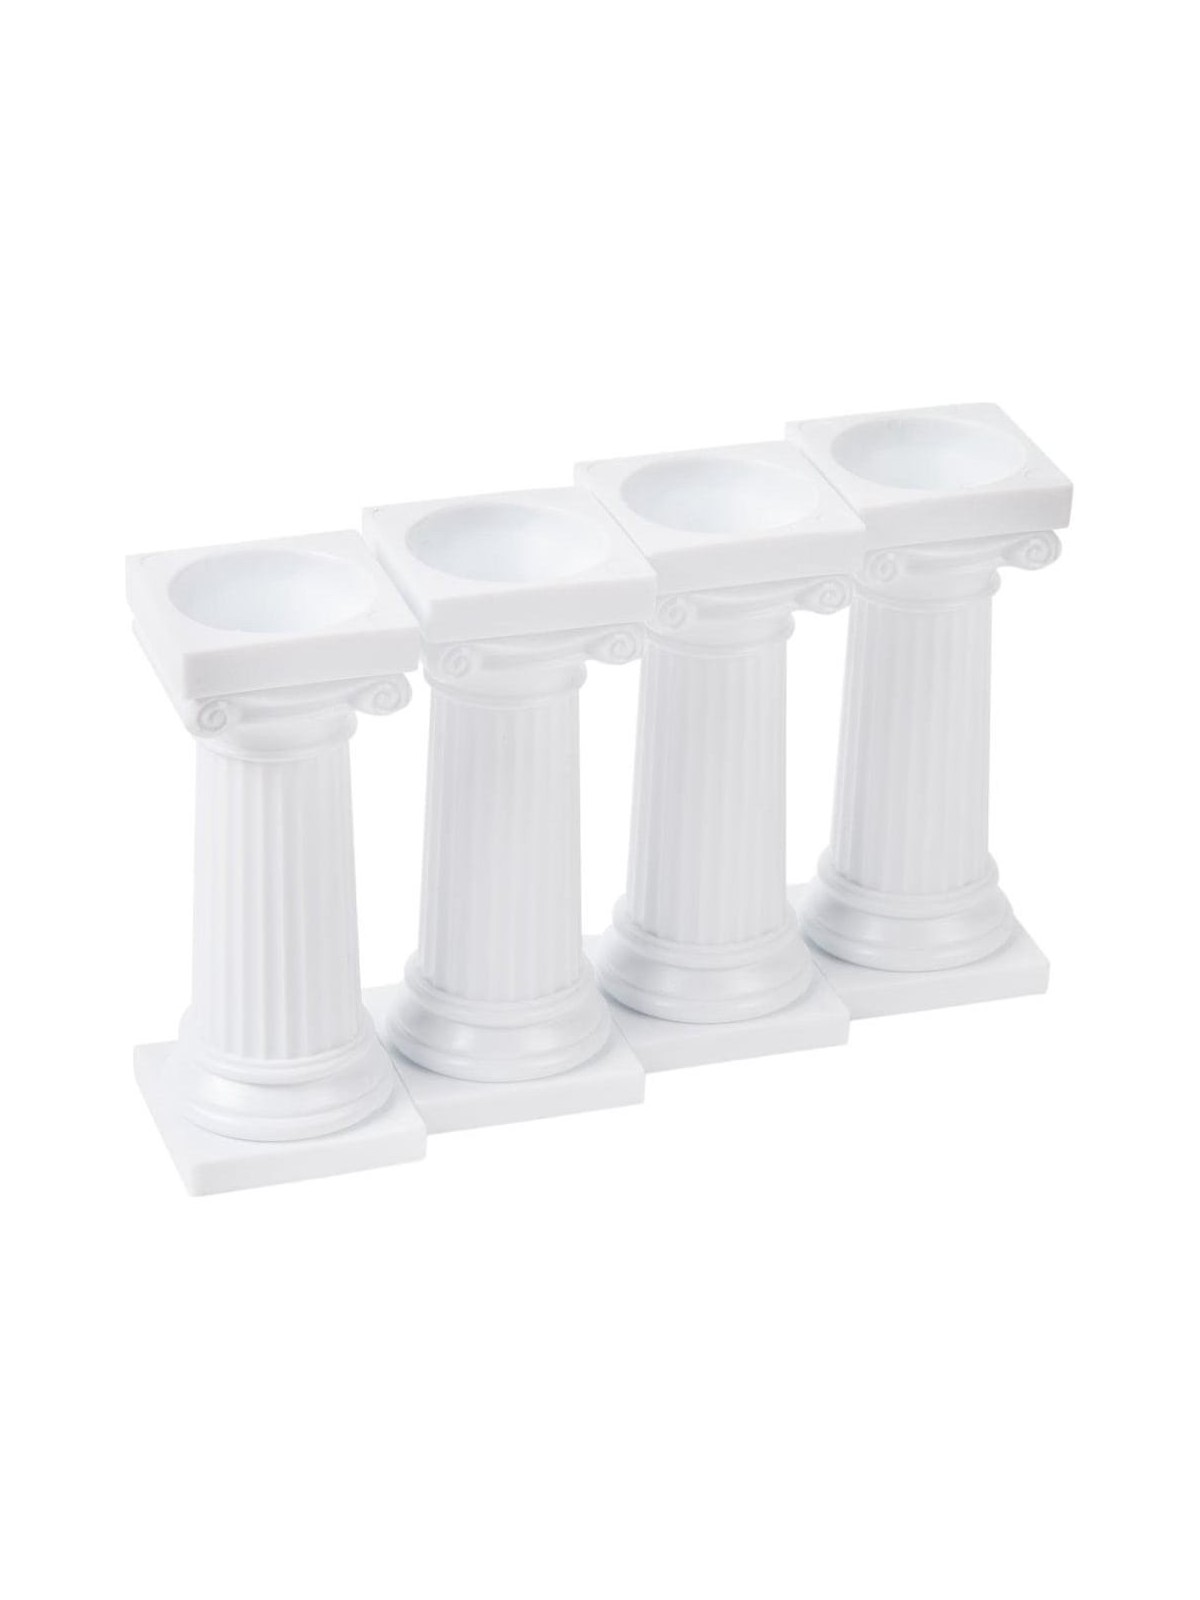 Caketools - Greek columns - 4pcs 8cm